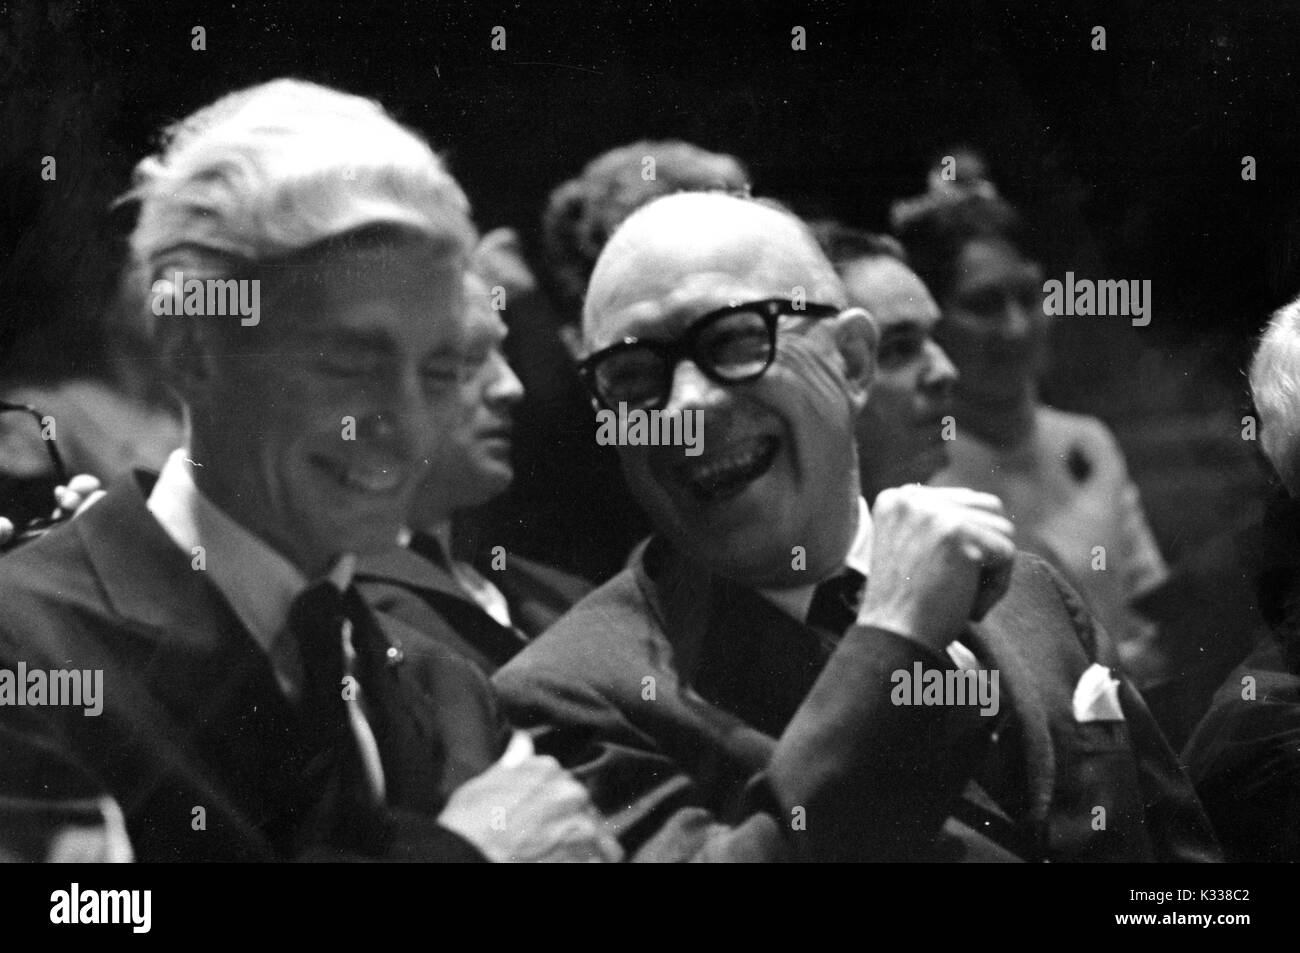 Candid Foto von amerikanischen pädagogischen Administrator und Präsident der Johns Hopkins University Milton S. Eisenhower (rechts) Sprechen und Lachen, 1969. Stockfoto